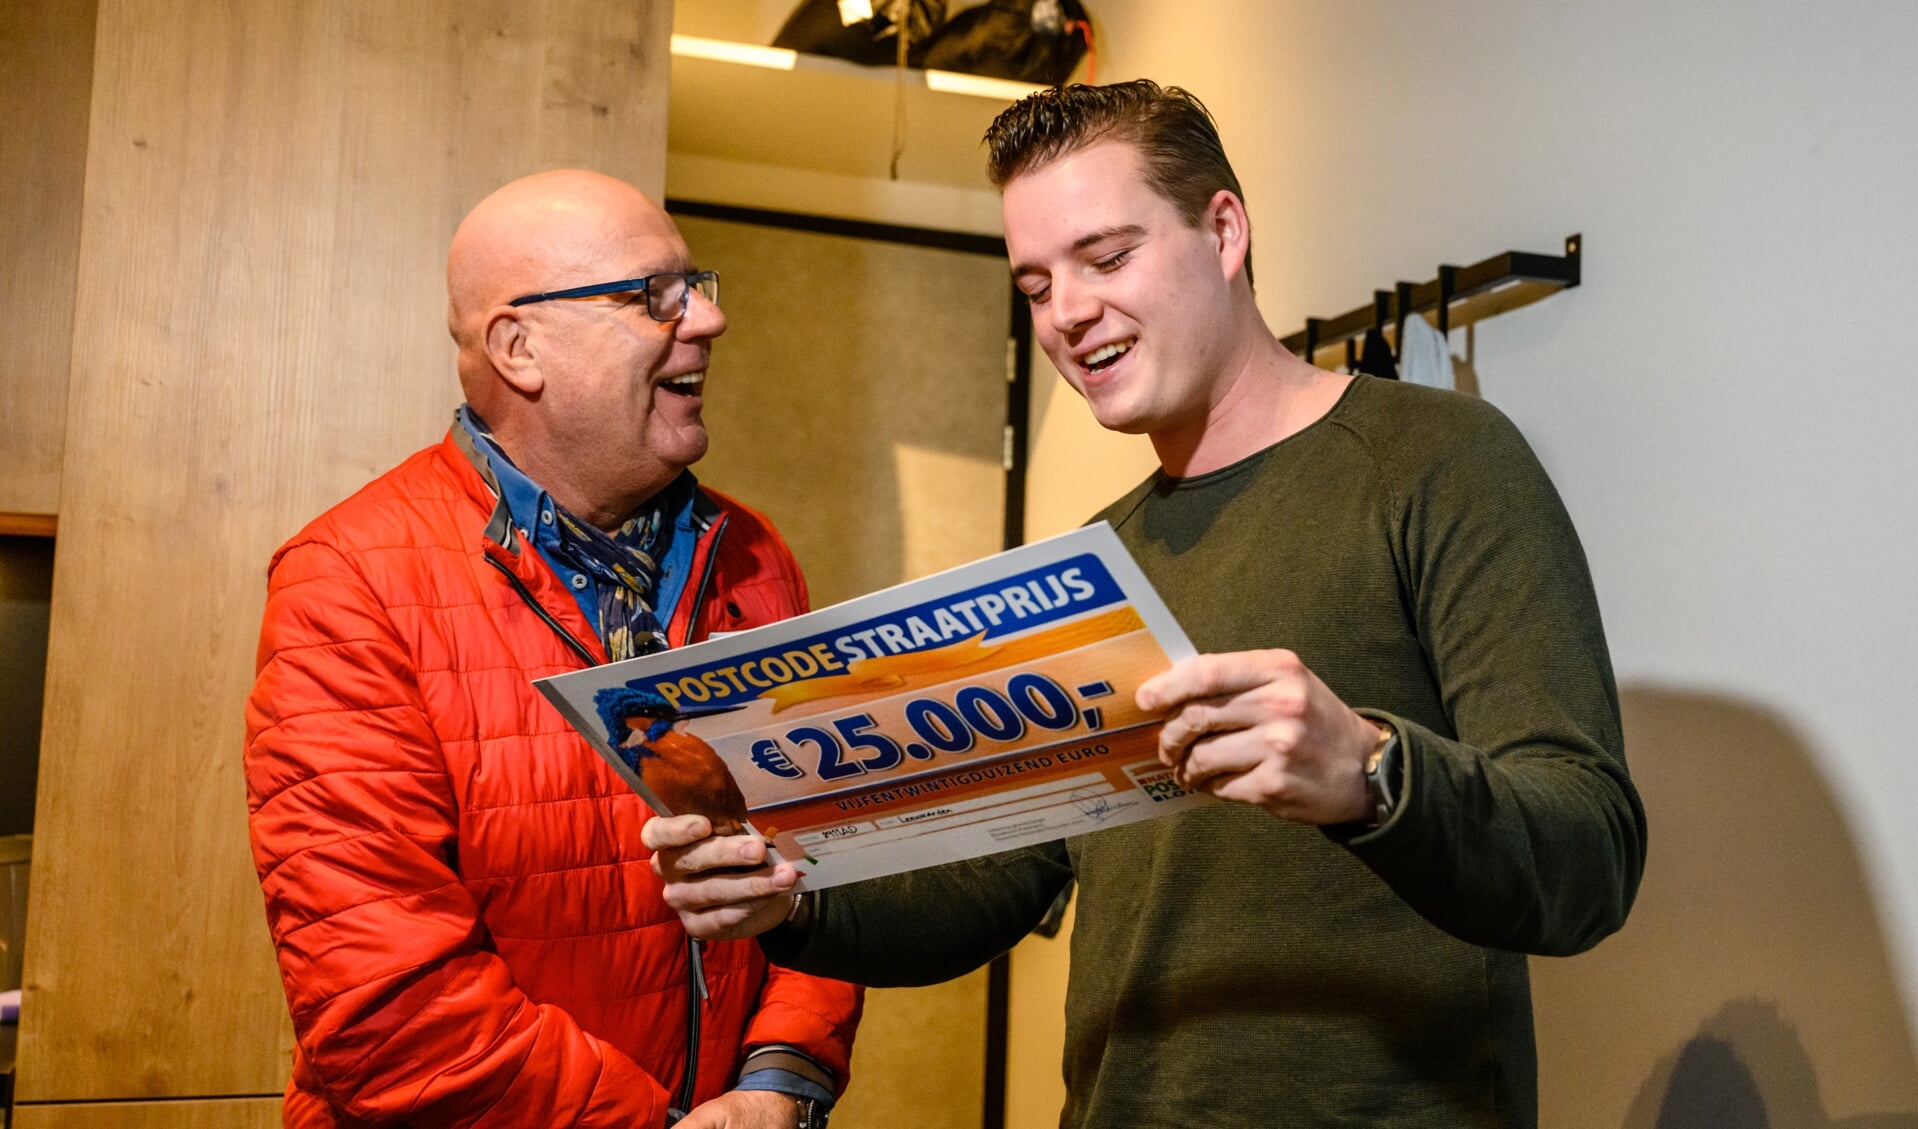 Daniel uit Leeuwarden wint PostcodeStraatprijs van 25.000 euro